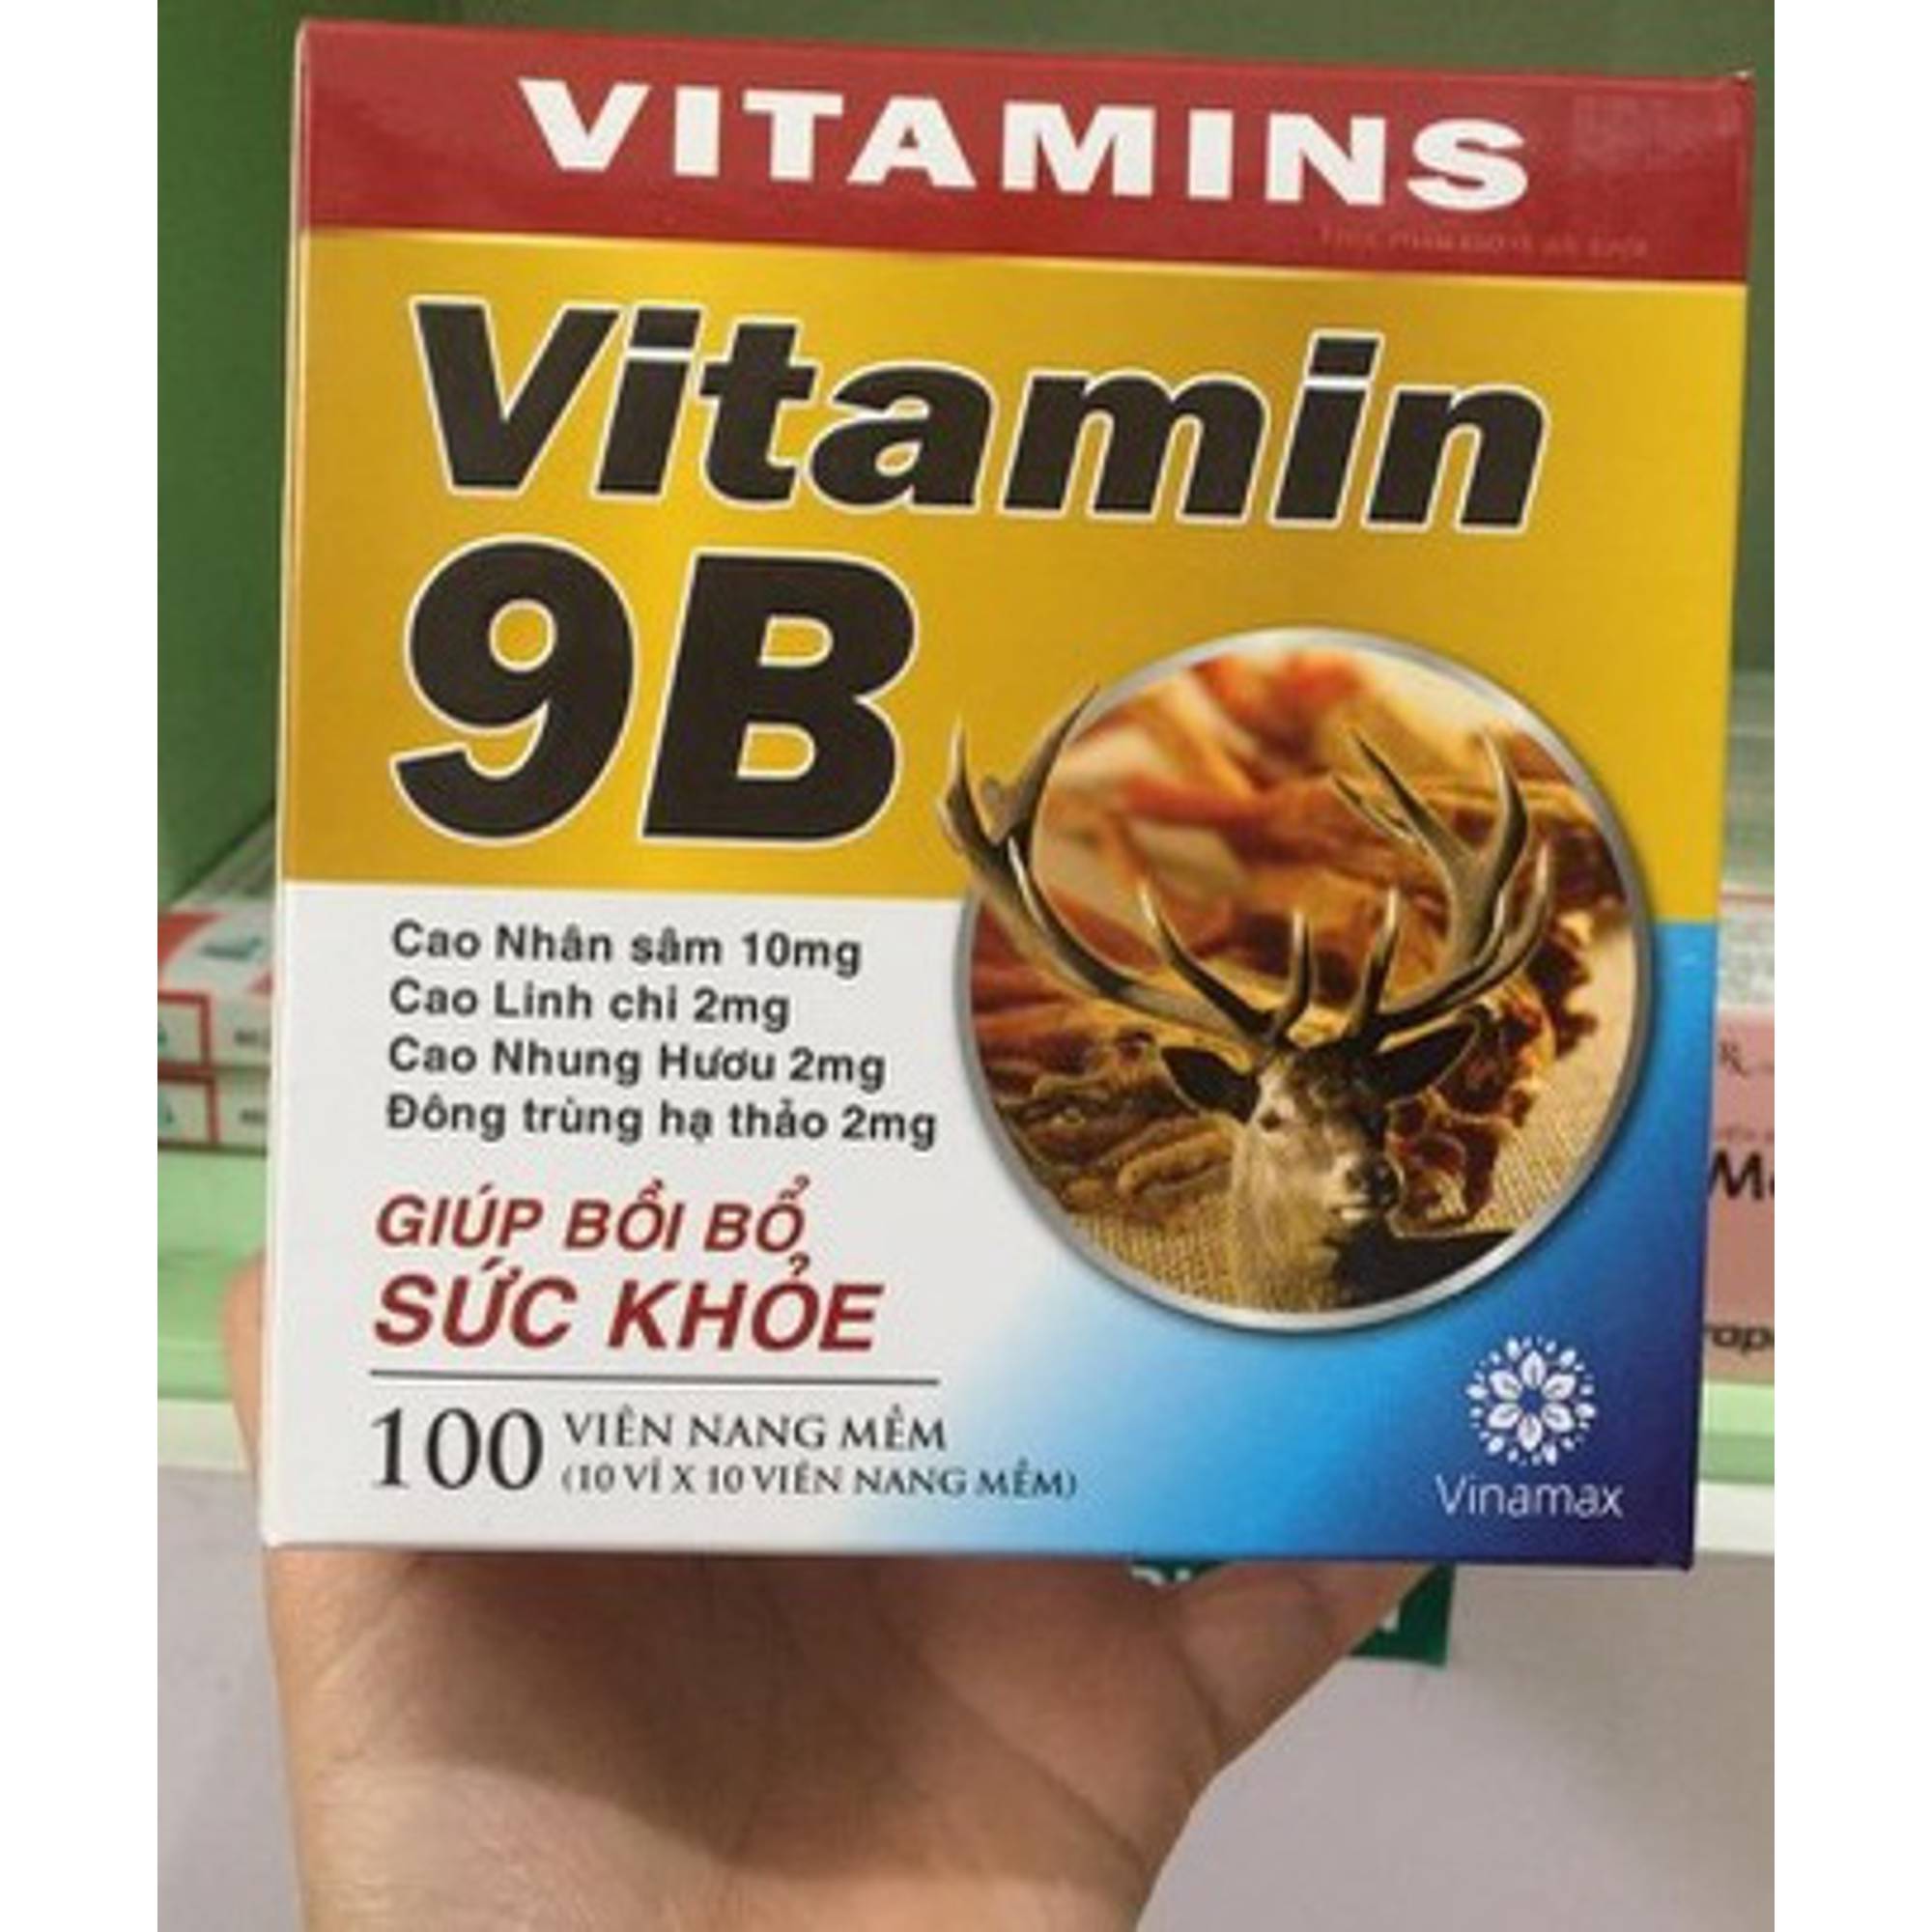 Có cách nào để mua thuốc Vitamin 9B chất lượng và uy tín?